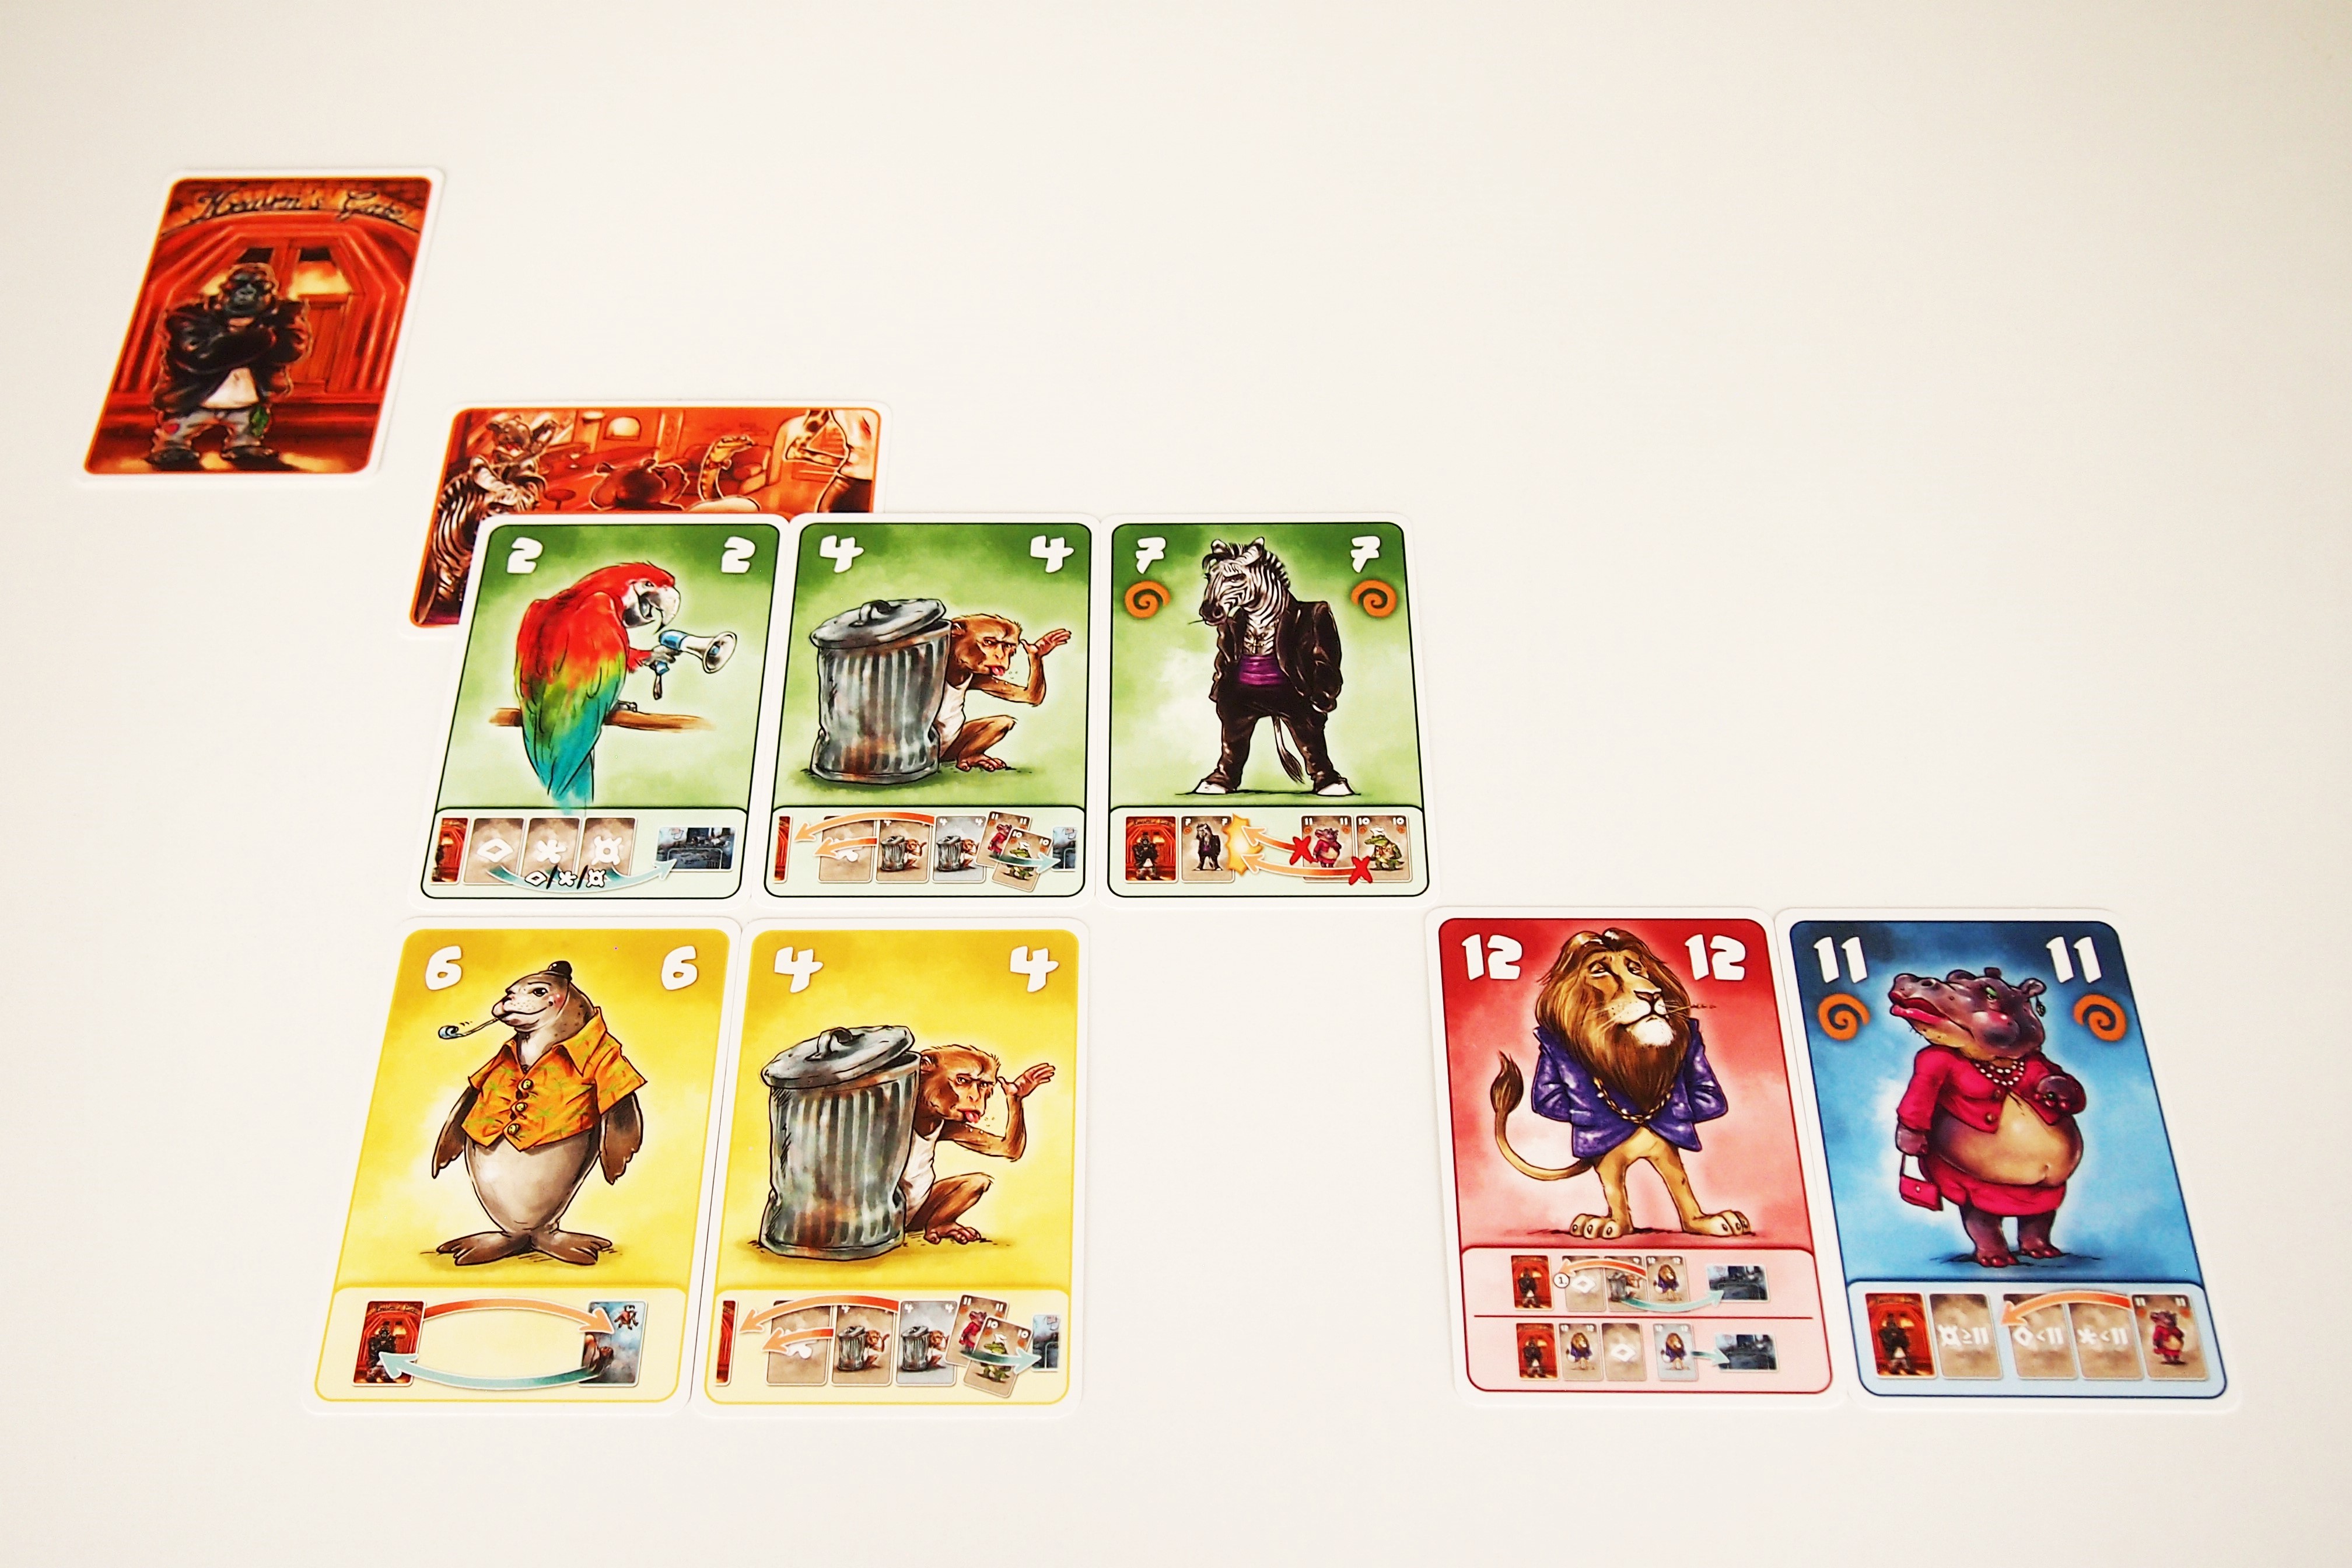 Cuando se agoten las cartas de descubre qué animales han entrado al bar. El jugador con el mayor número será el ganador. 